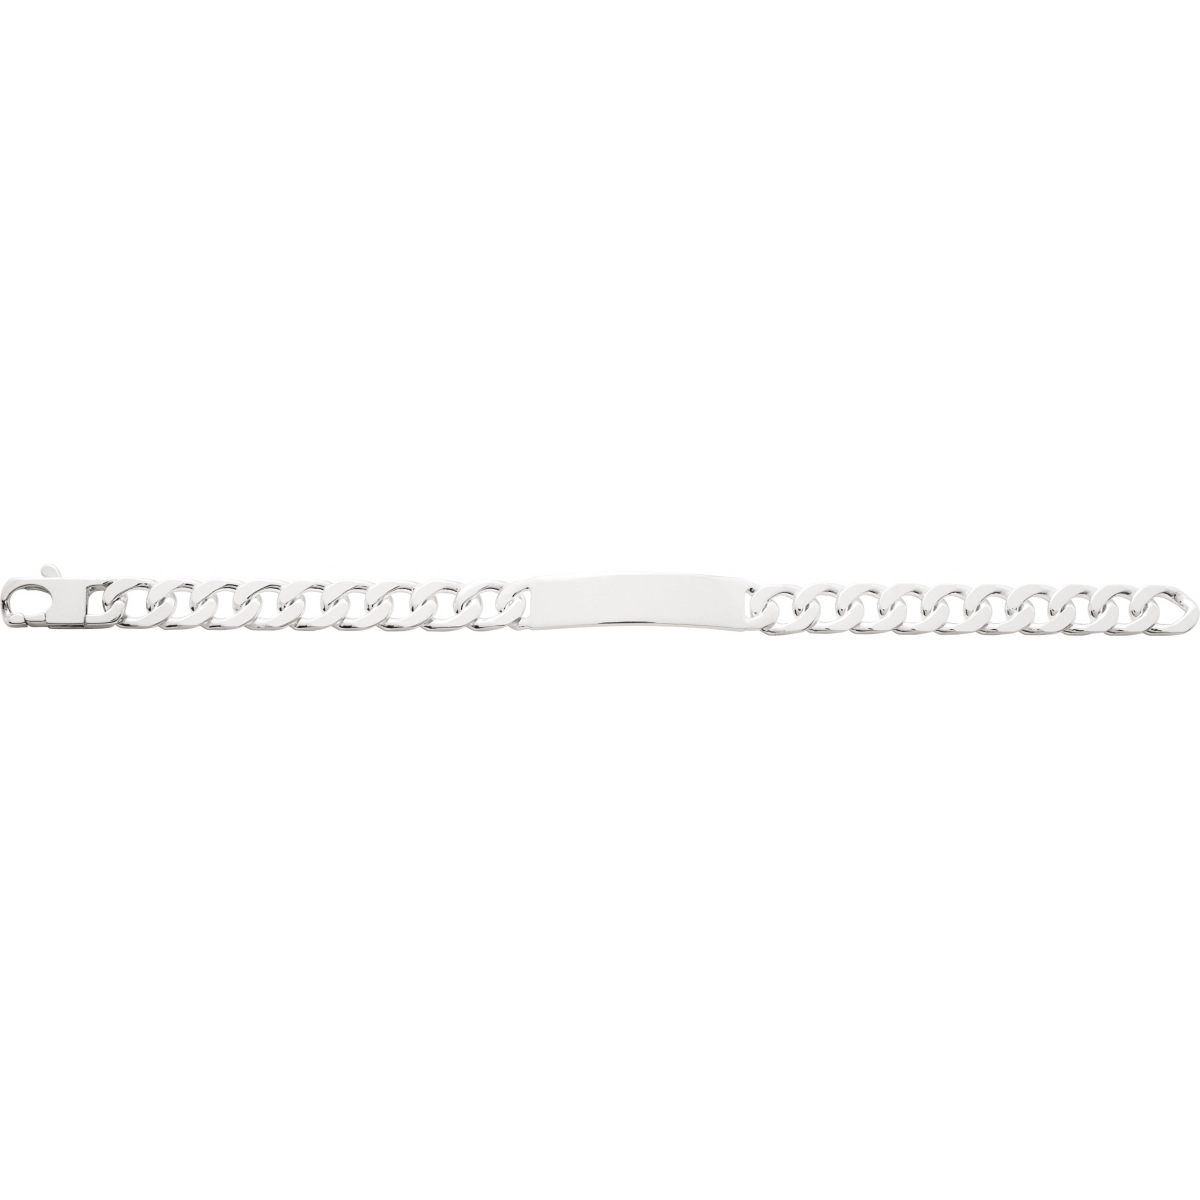 ID bracelet 10mm 925 silver Lua Blanca  337466.89 - Size 22